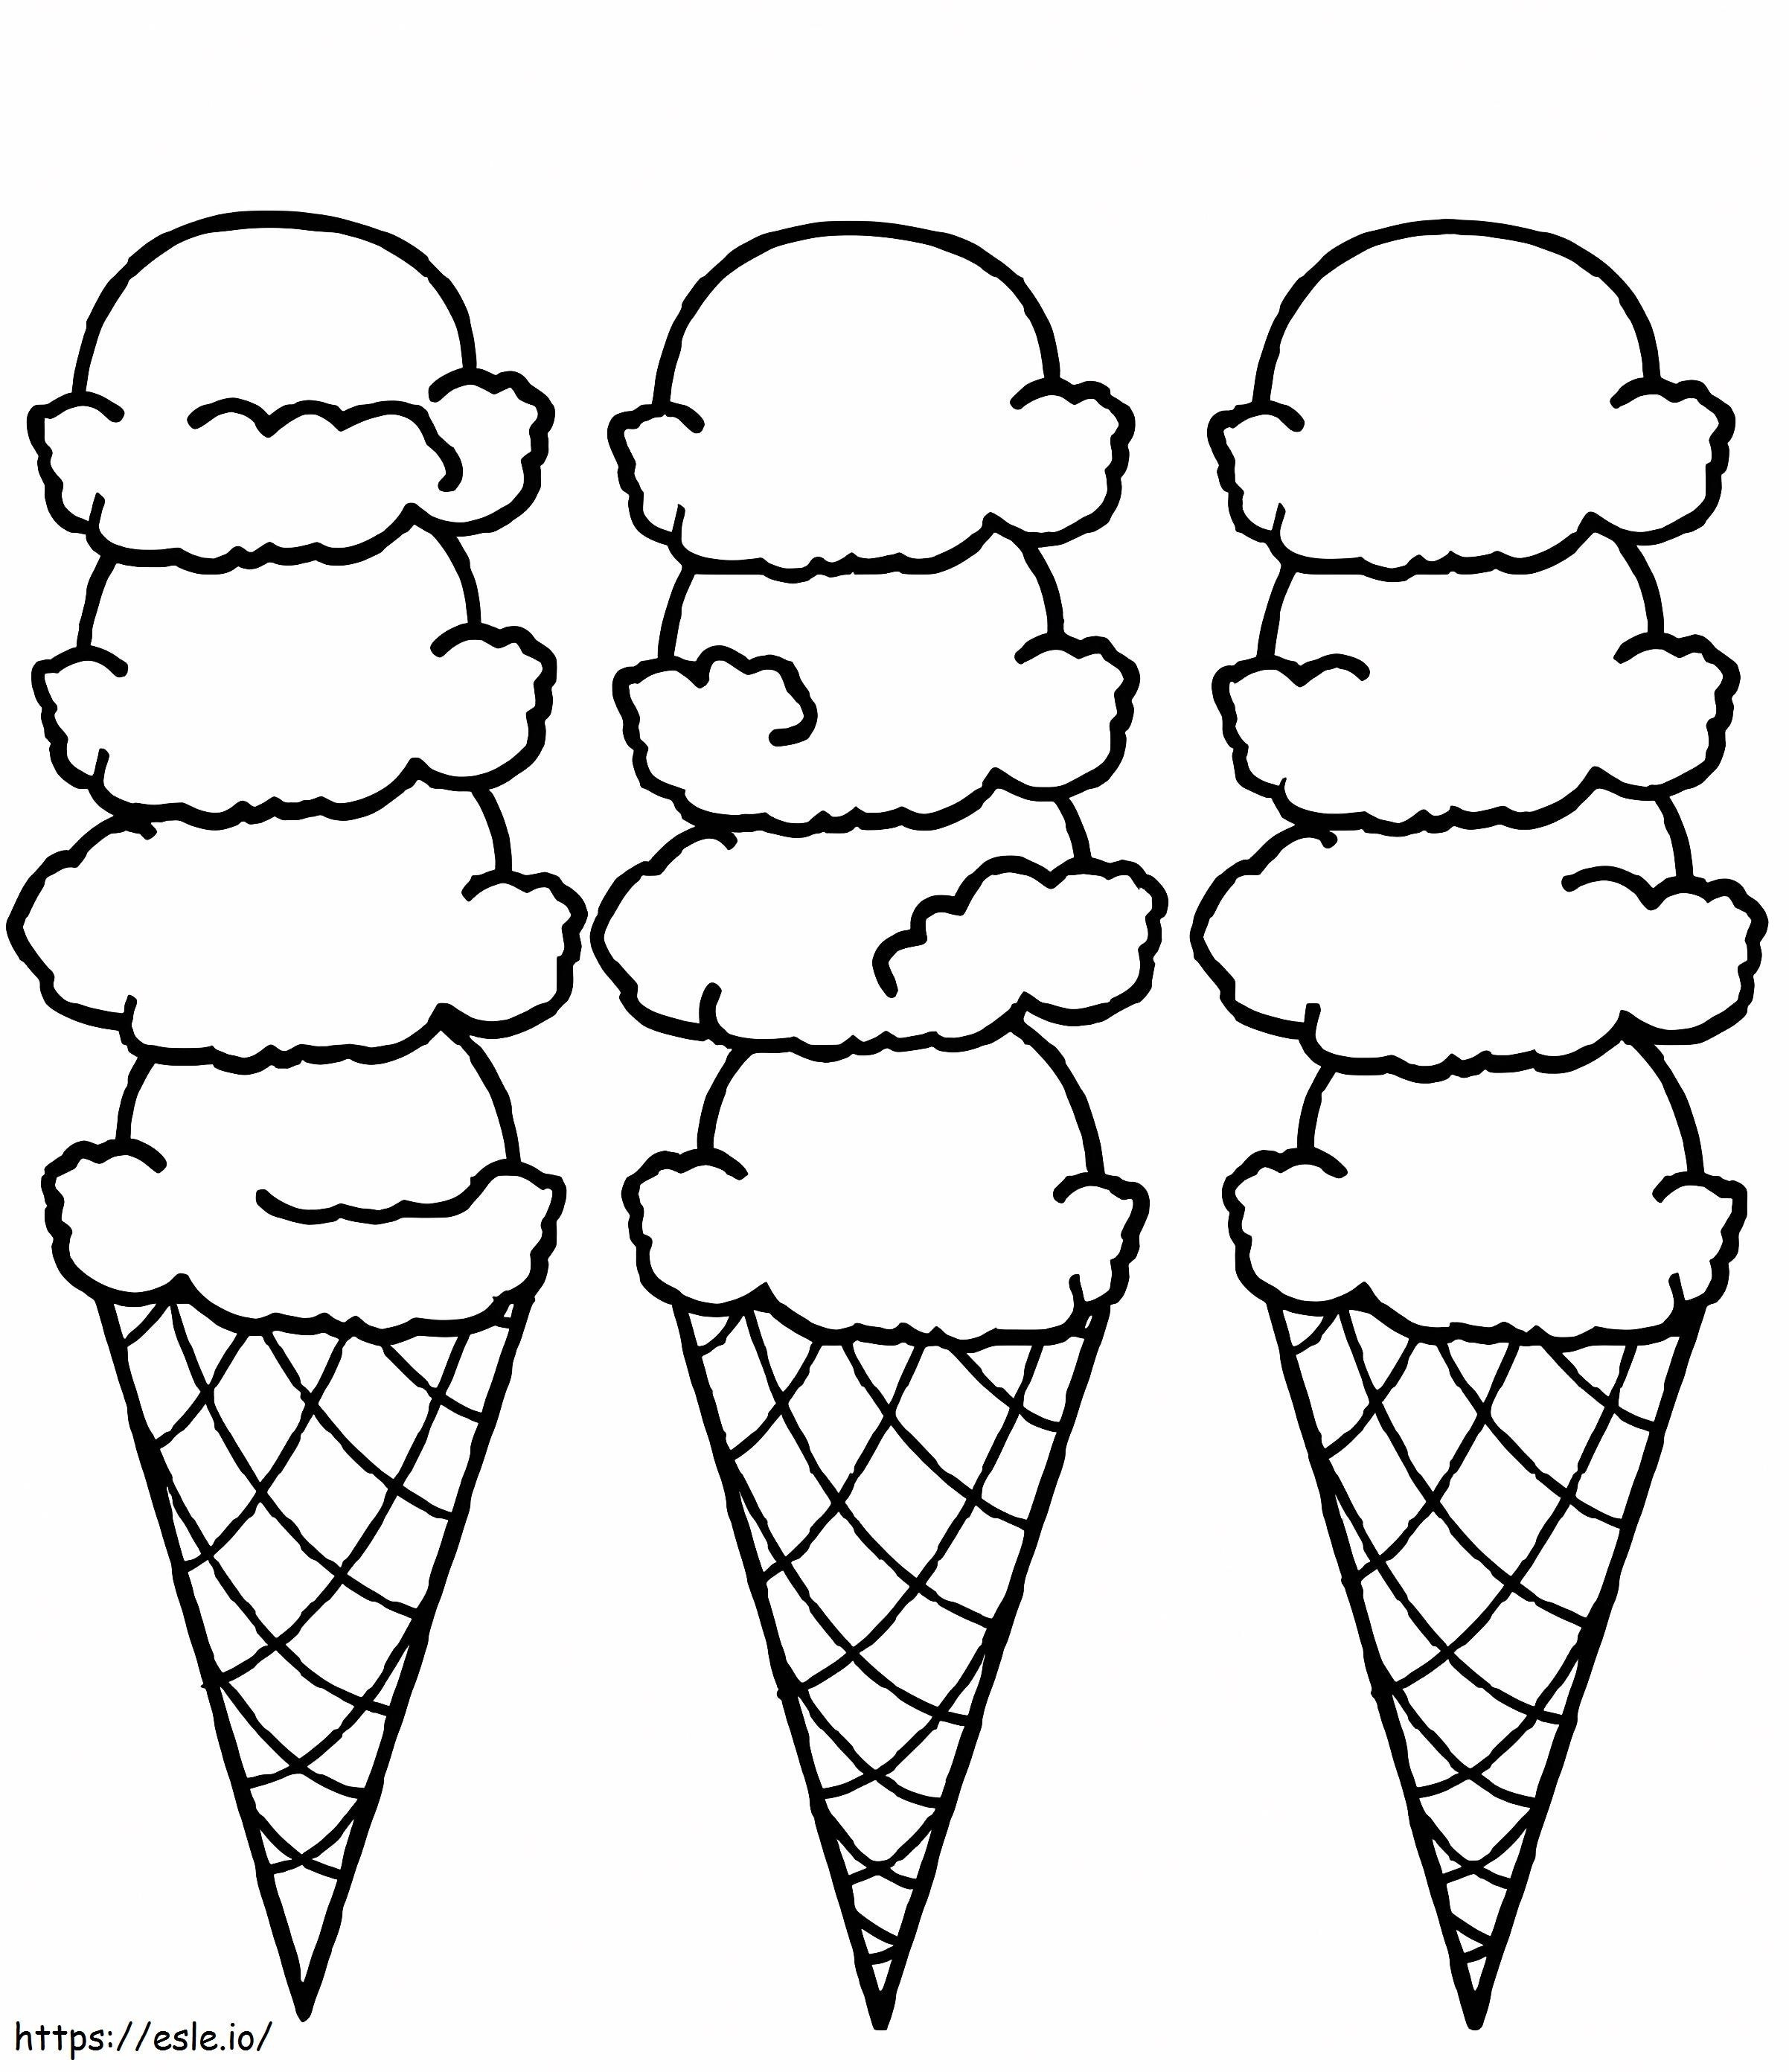 Drei lange Eiscreme ausmalbilder